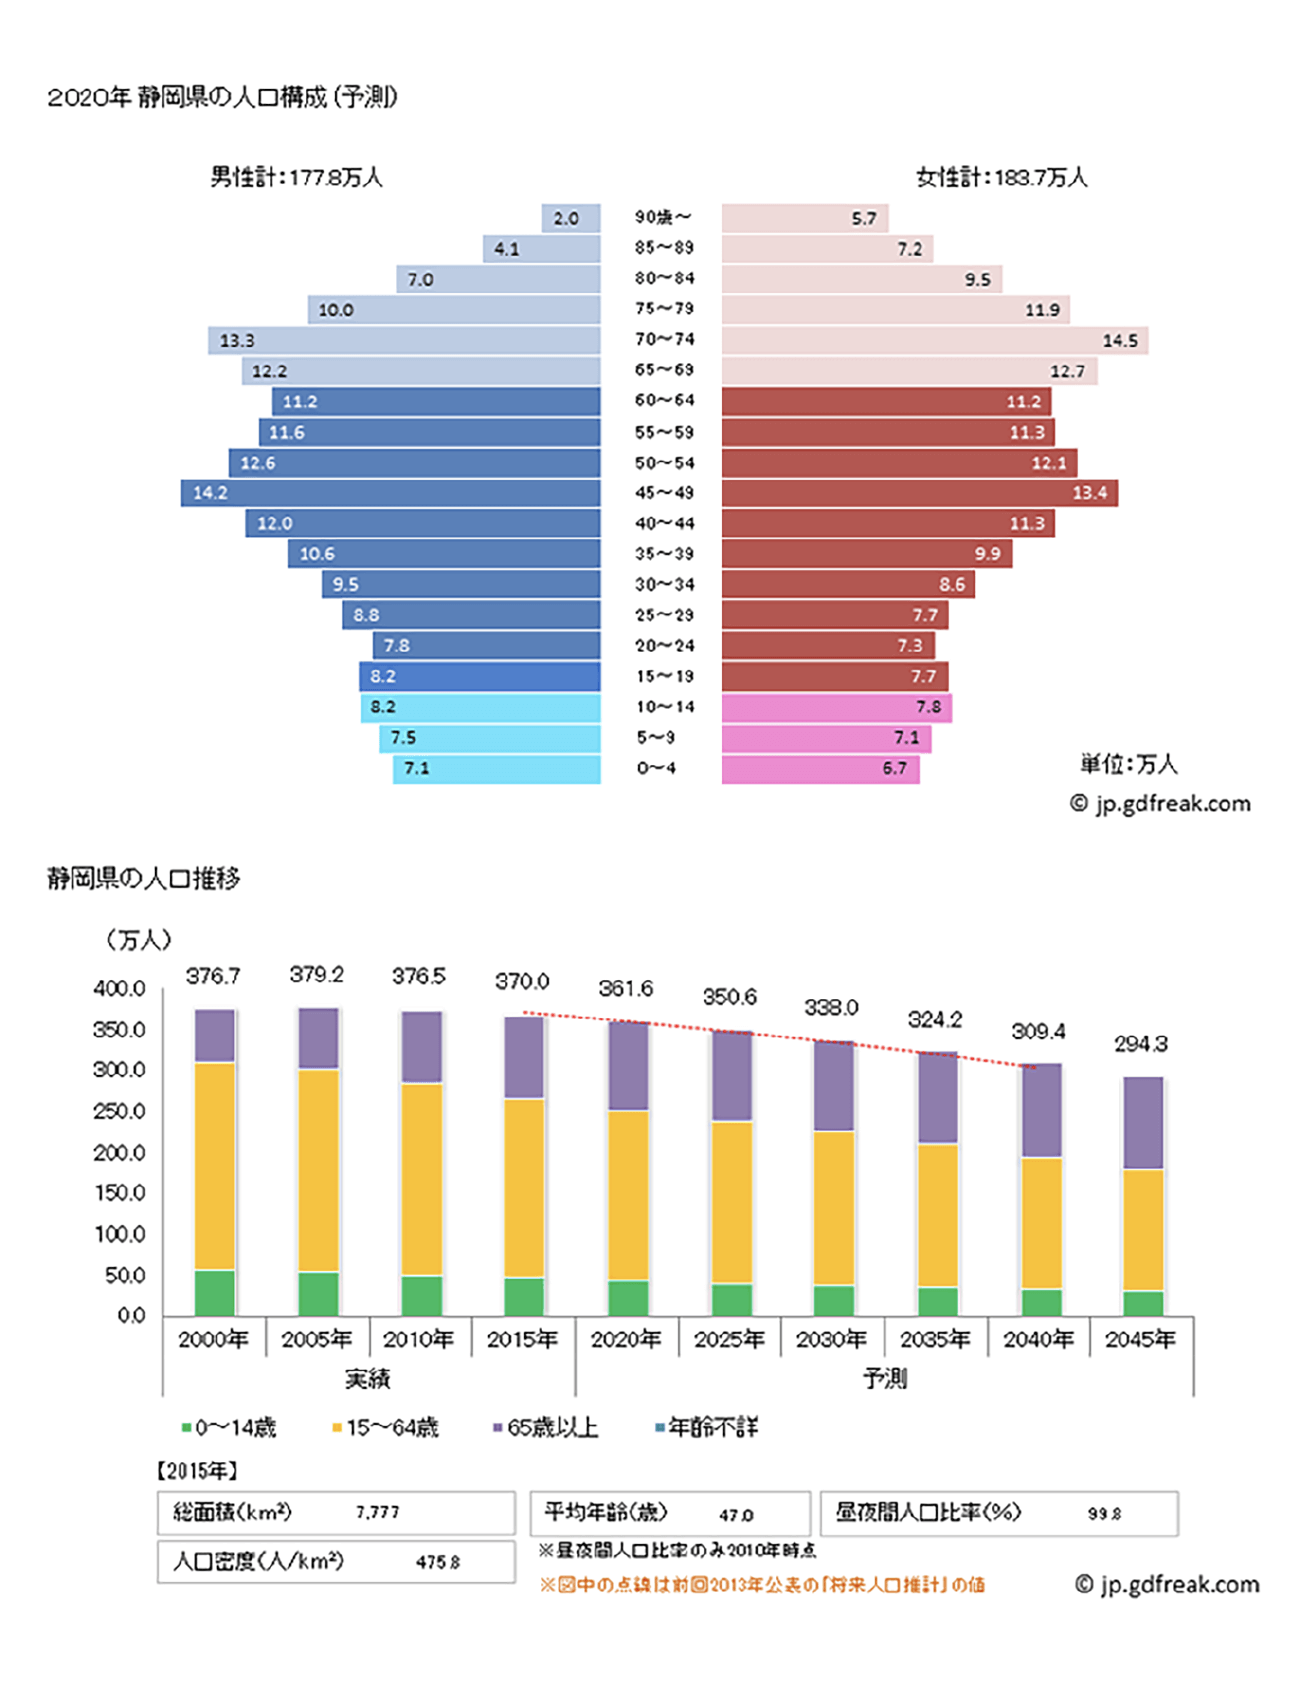 2020年静岡県の人口構成(予測)と静岡県の人口推移のグラフ